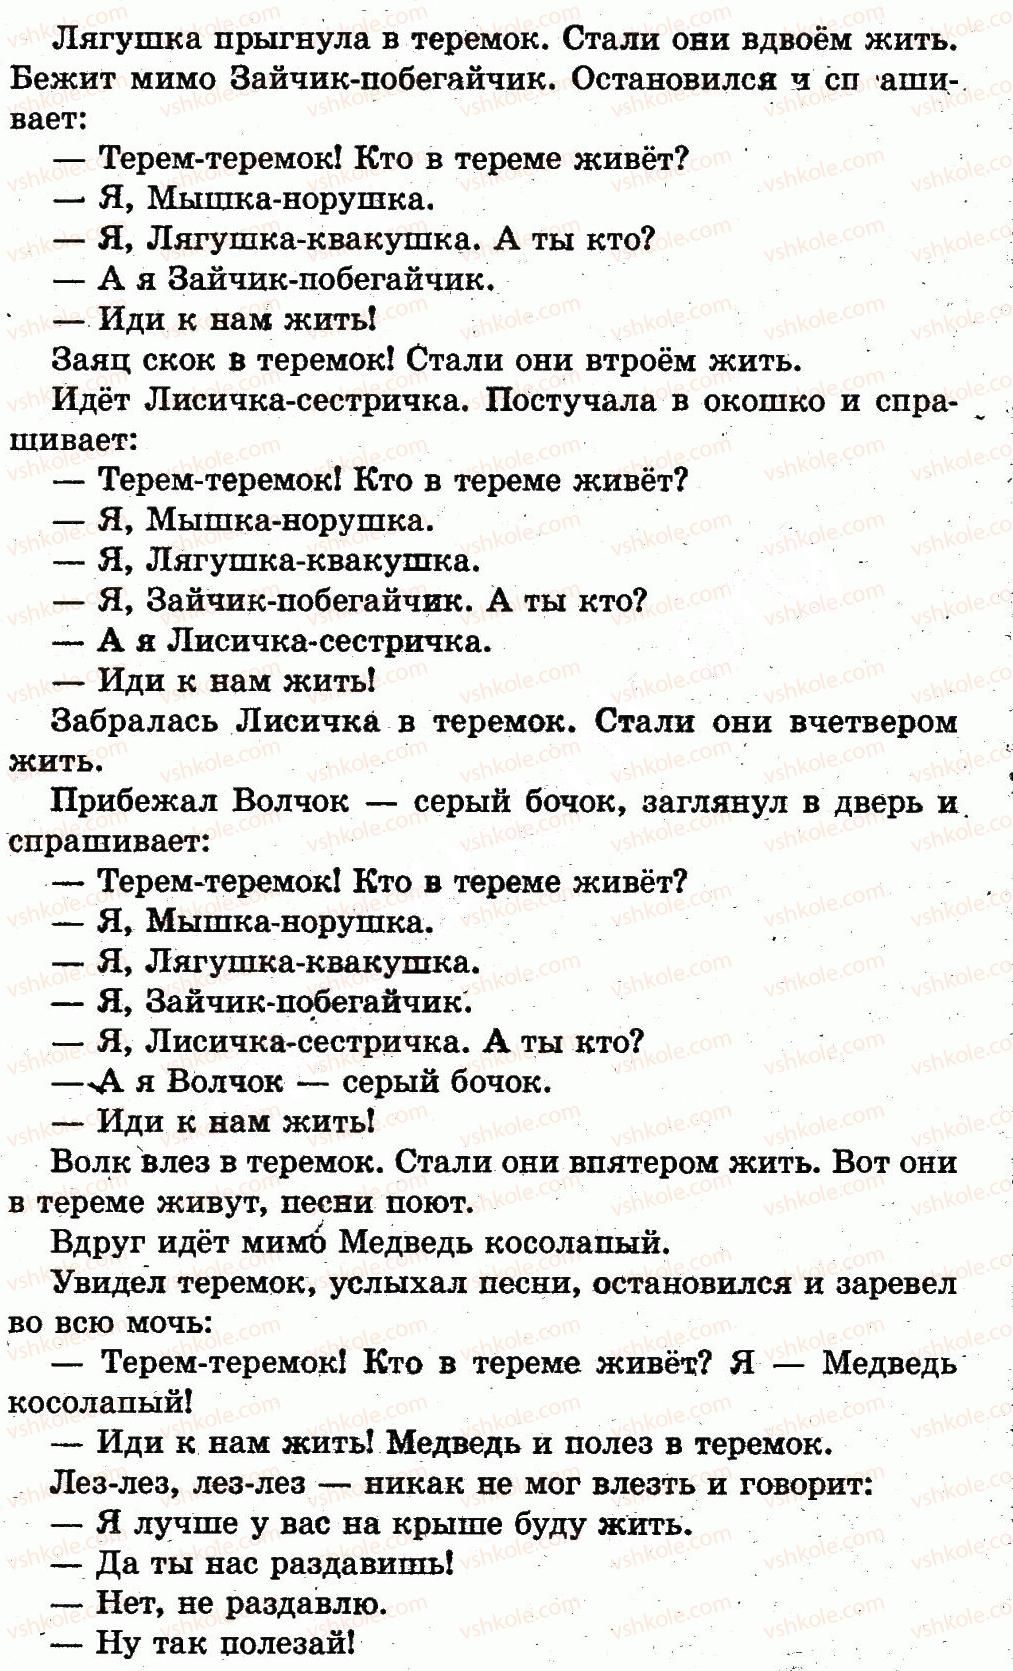 1-russkij-yazyk-in-lapshina-nn-zorka-2012--vremya-sutki-страница88-rnd2916.jpg